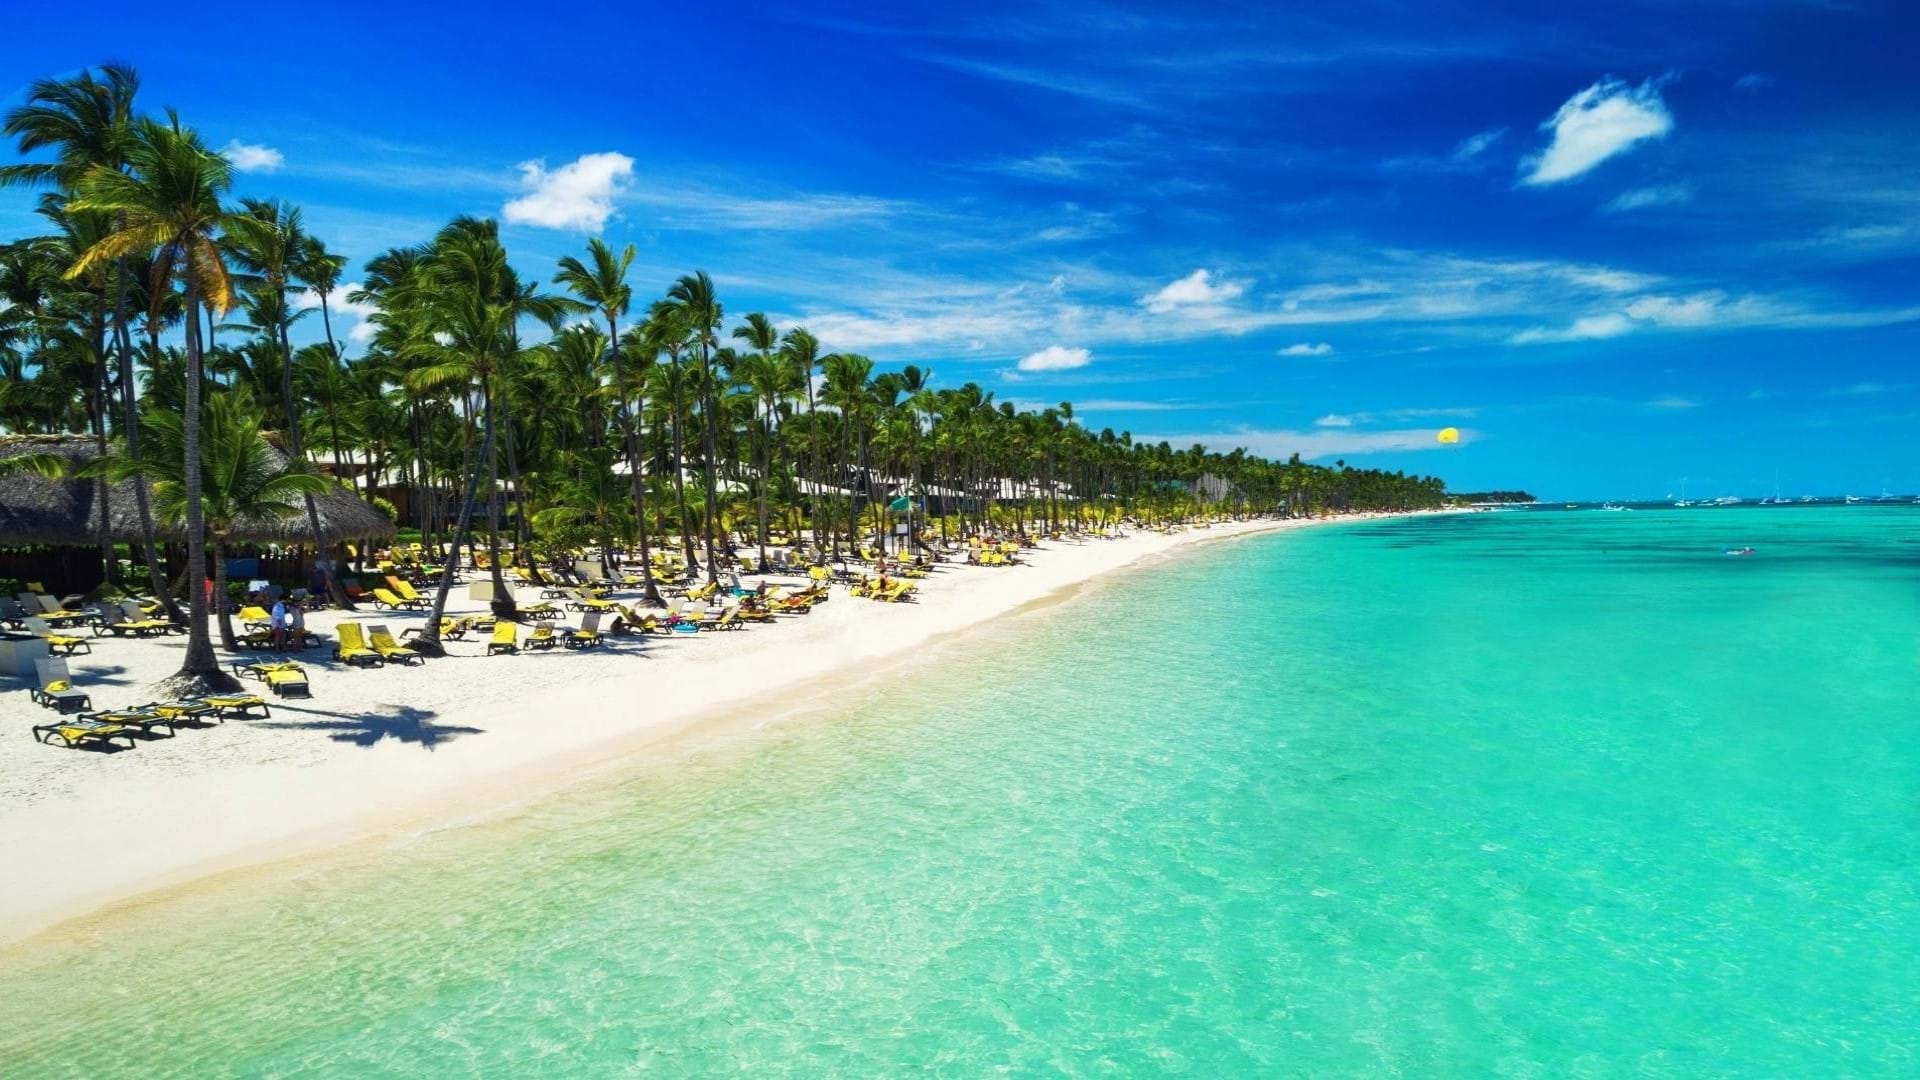 Plaža jednog od mnogobrojnih rizort hotela u Punta Kani u Dominikanskoj Republici. Beli pesak, tirkizno more i predivna obala sa palmama i barom za goste hotela.